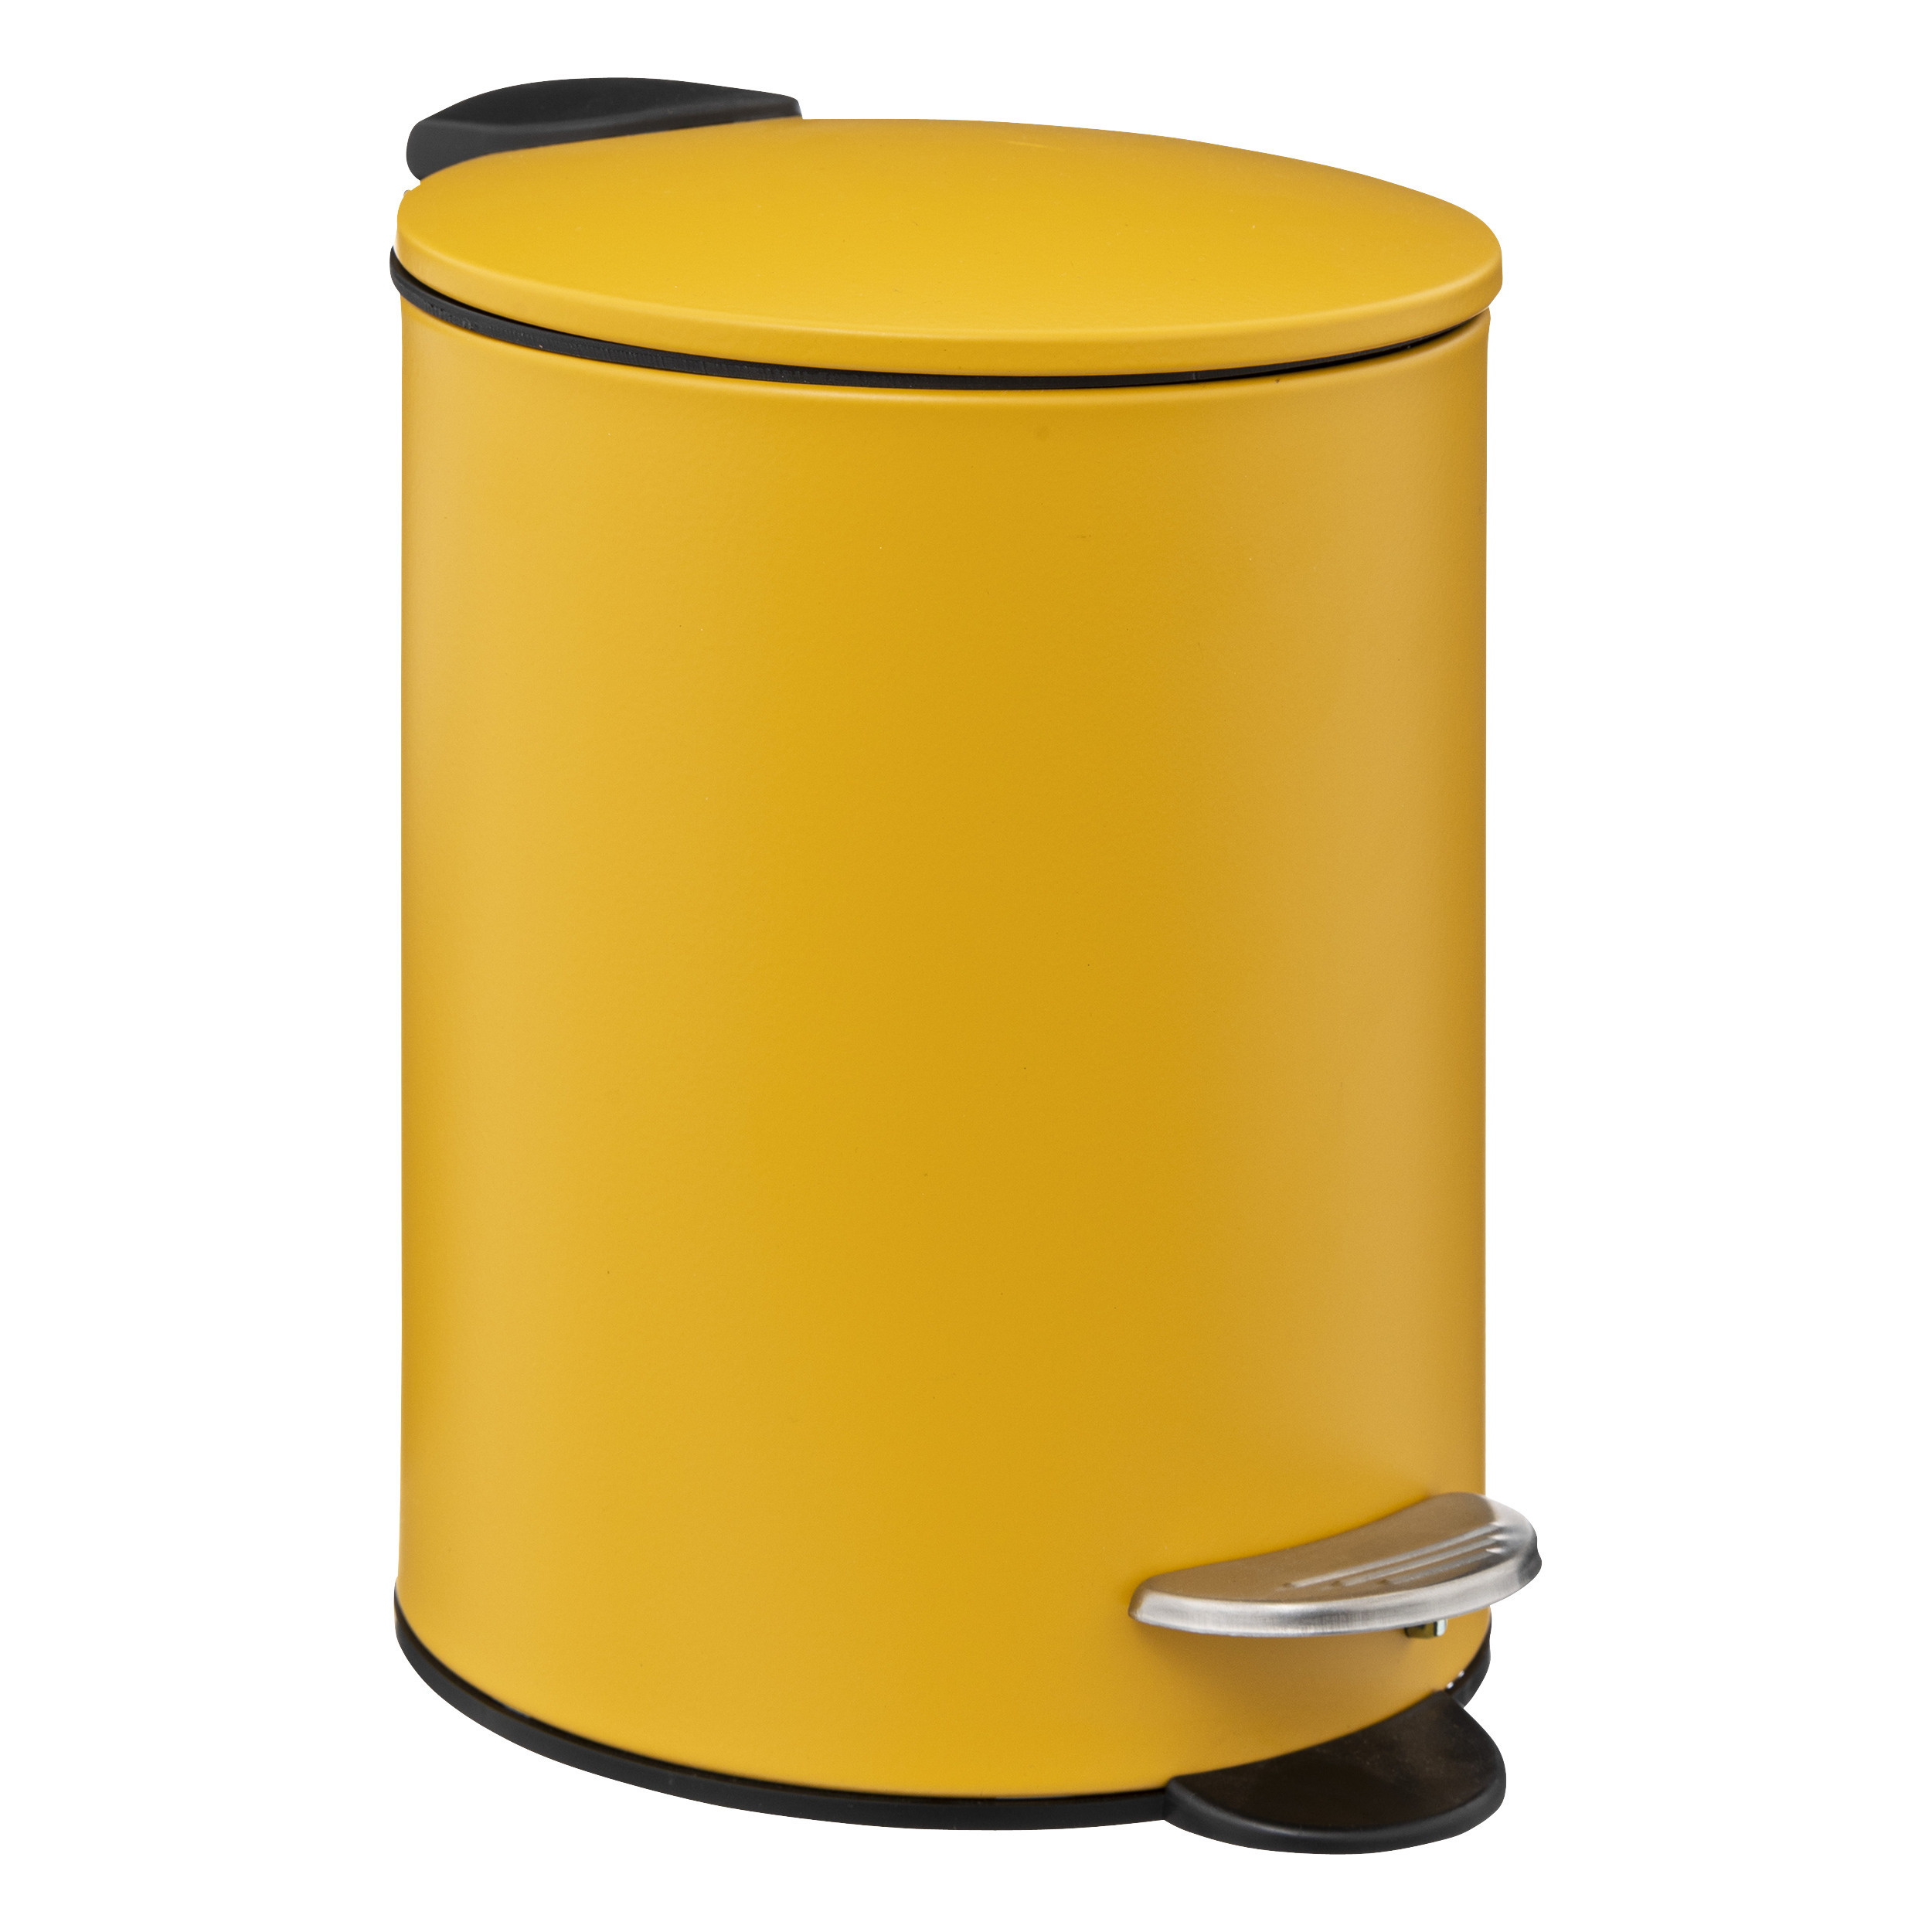 Prullenbak-pedaalemmer mosterd geel metaal 3 liter 17 x 23 cm